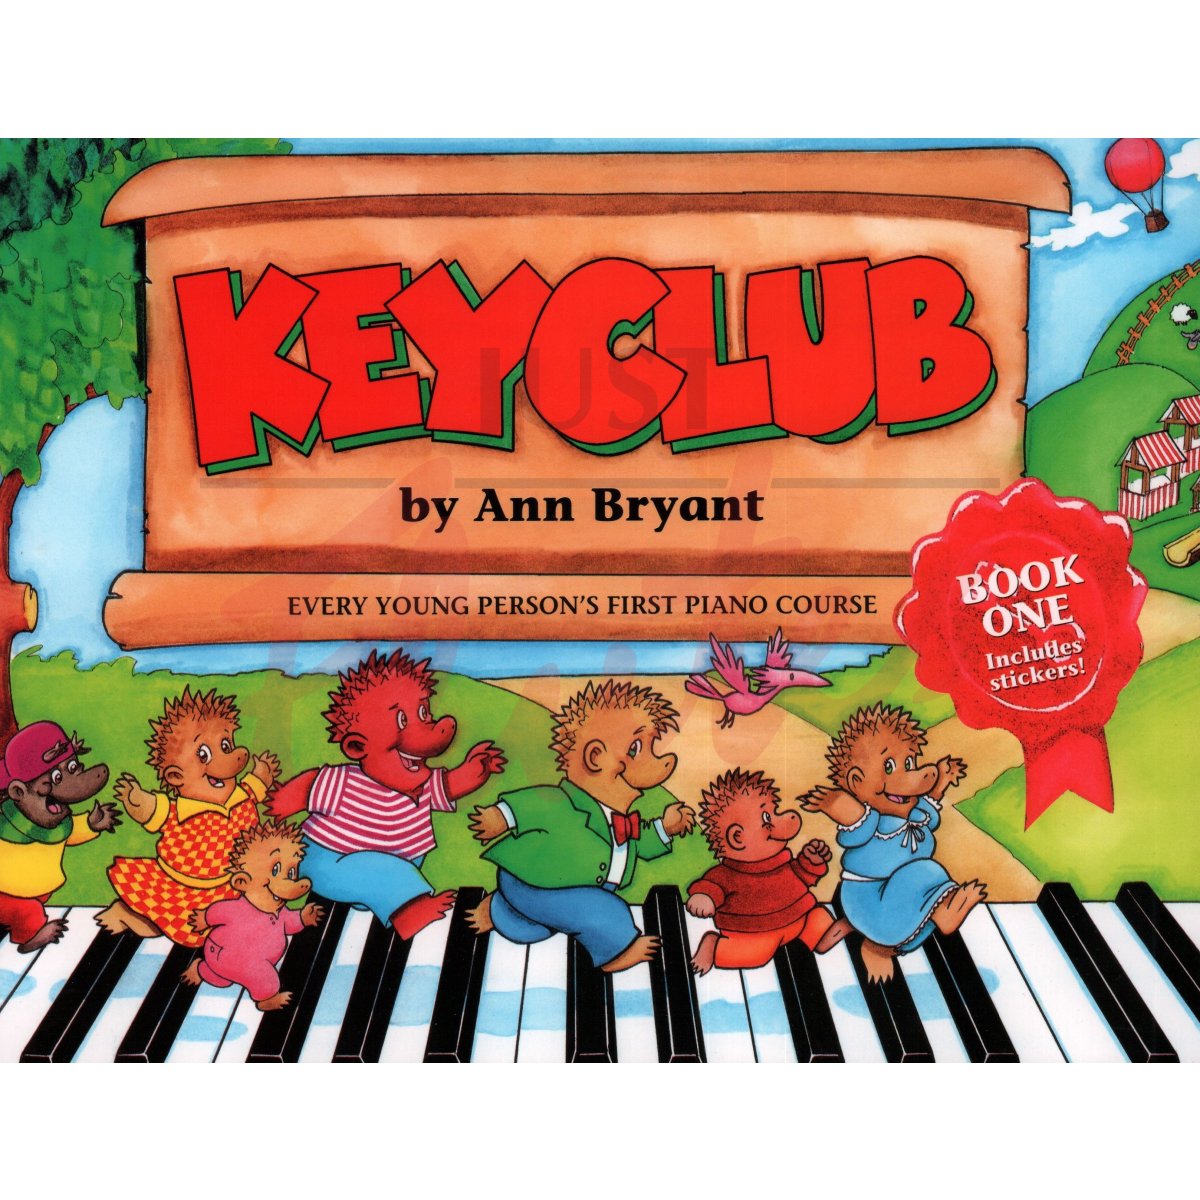 Keyclub Book 1